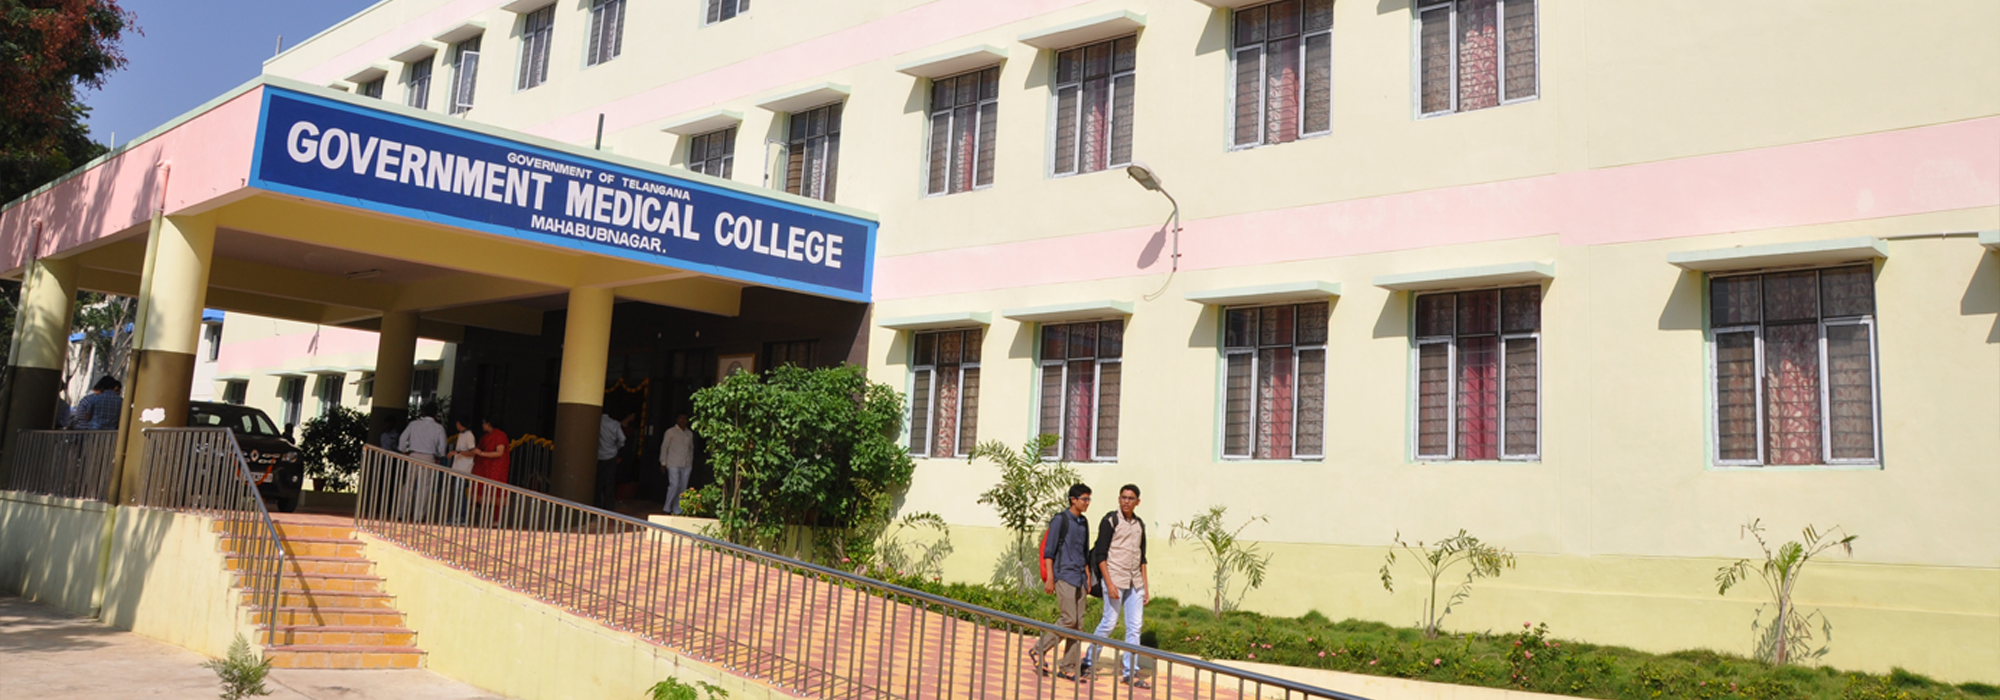 Government Medical College, Mahabubnagar, Mahbubnagar Image